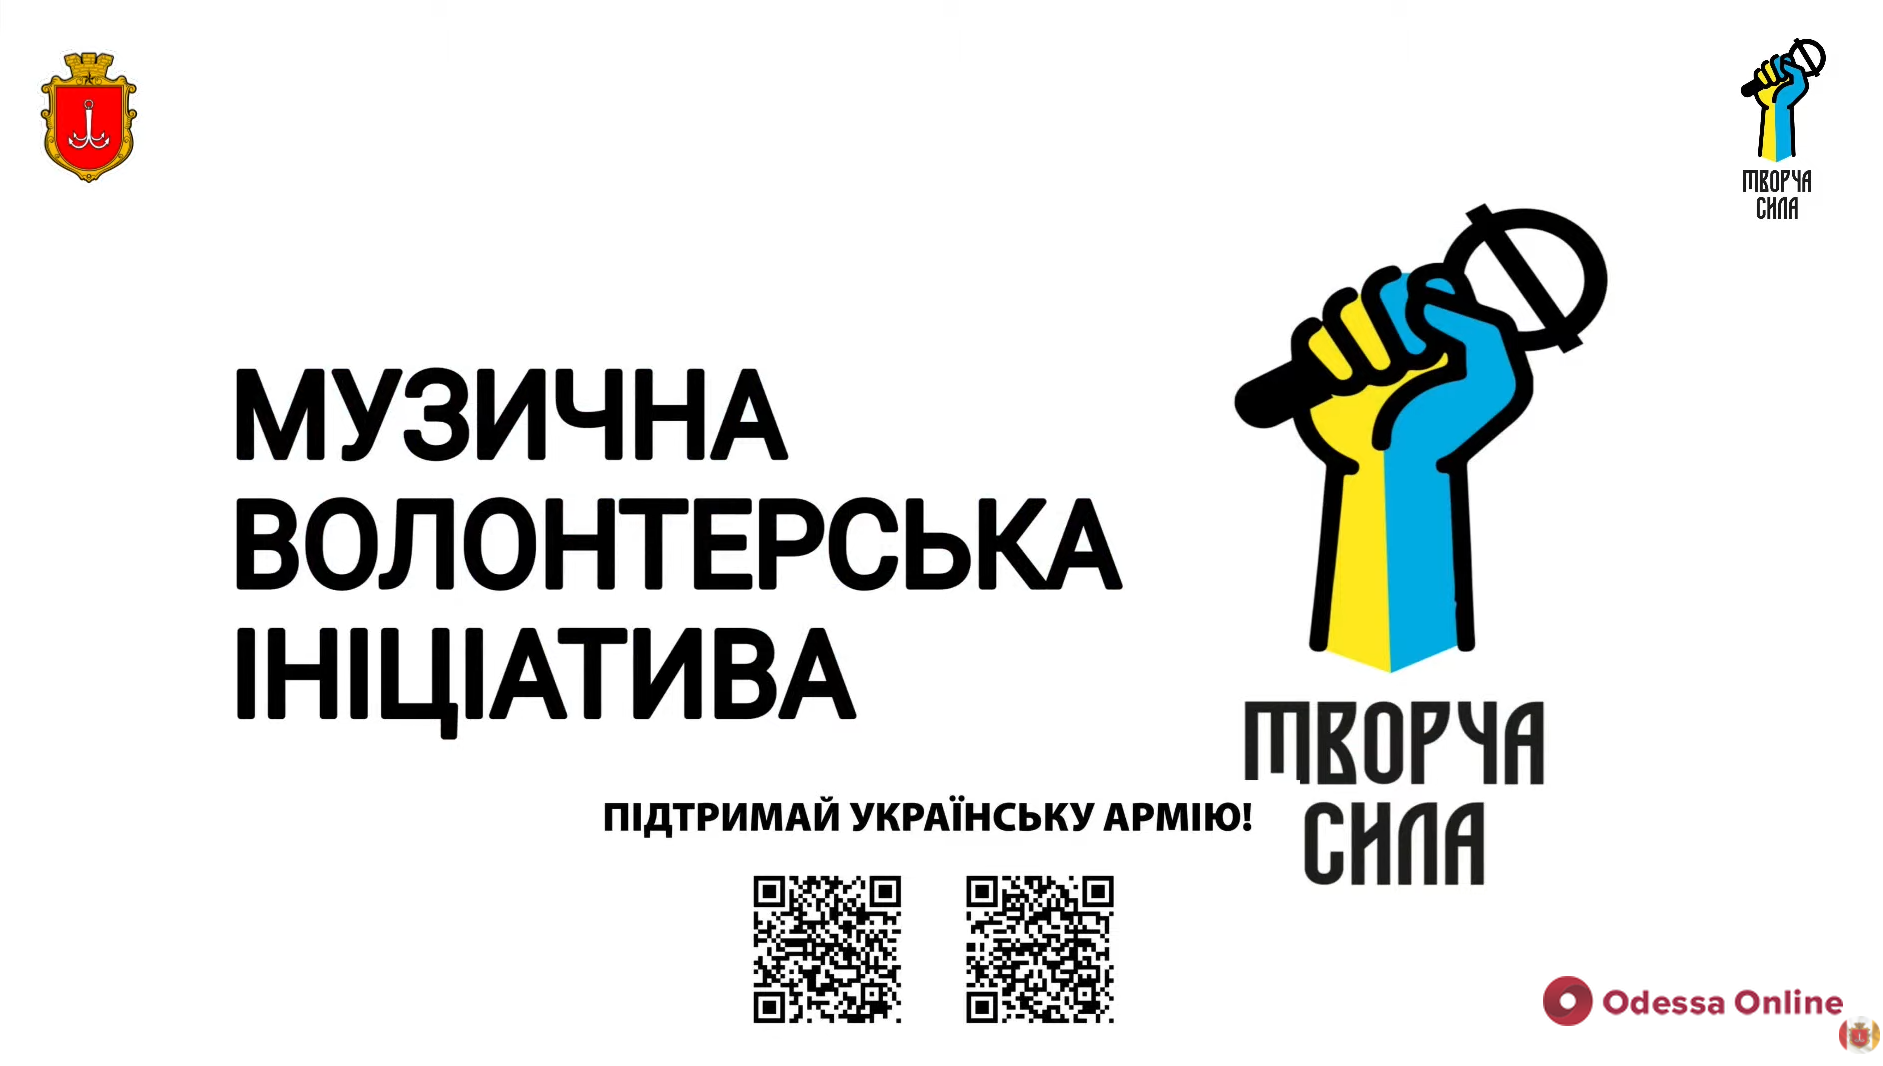 В Одессе проходит онлайн-концерт в поддержку украинской армии